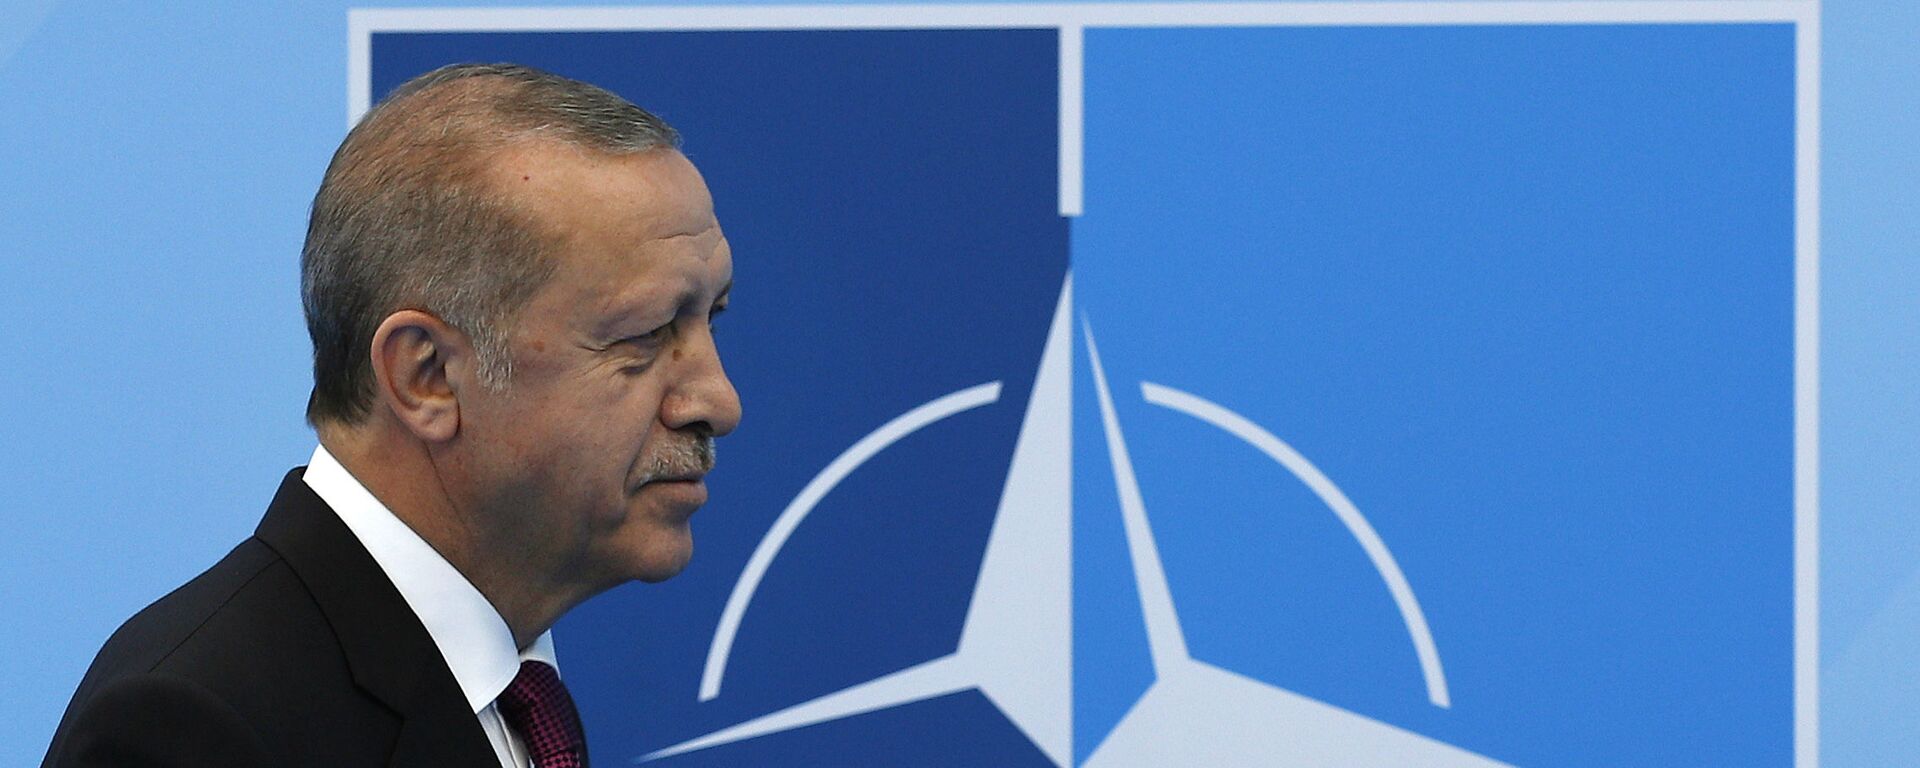 Tổng thống Thổ Nhĩ Kỳ Recep Tayyip Erdogan tại hội nghị thượng đỉnh NATO. - Sputnik Việt Nam, 1920, 23.05.2022